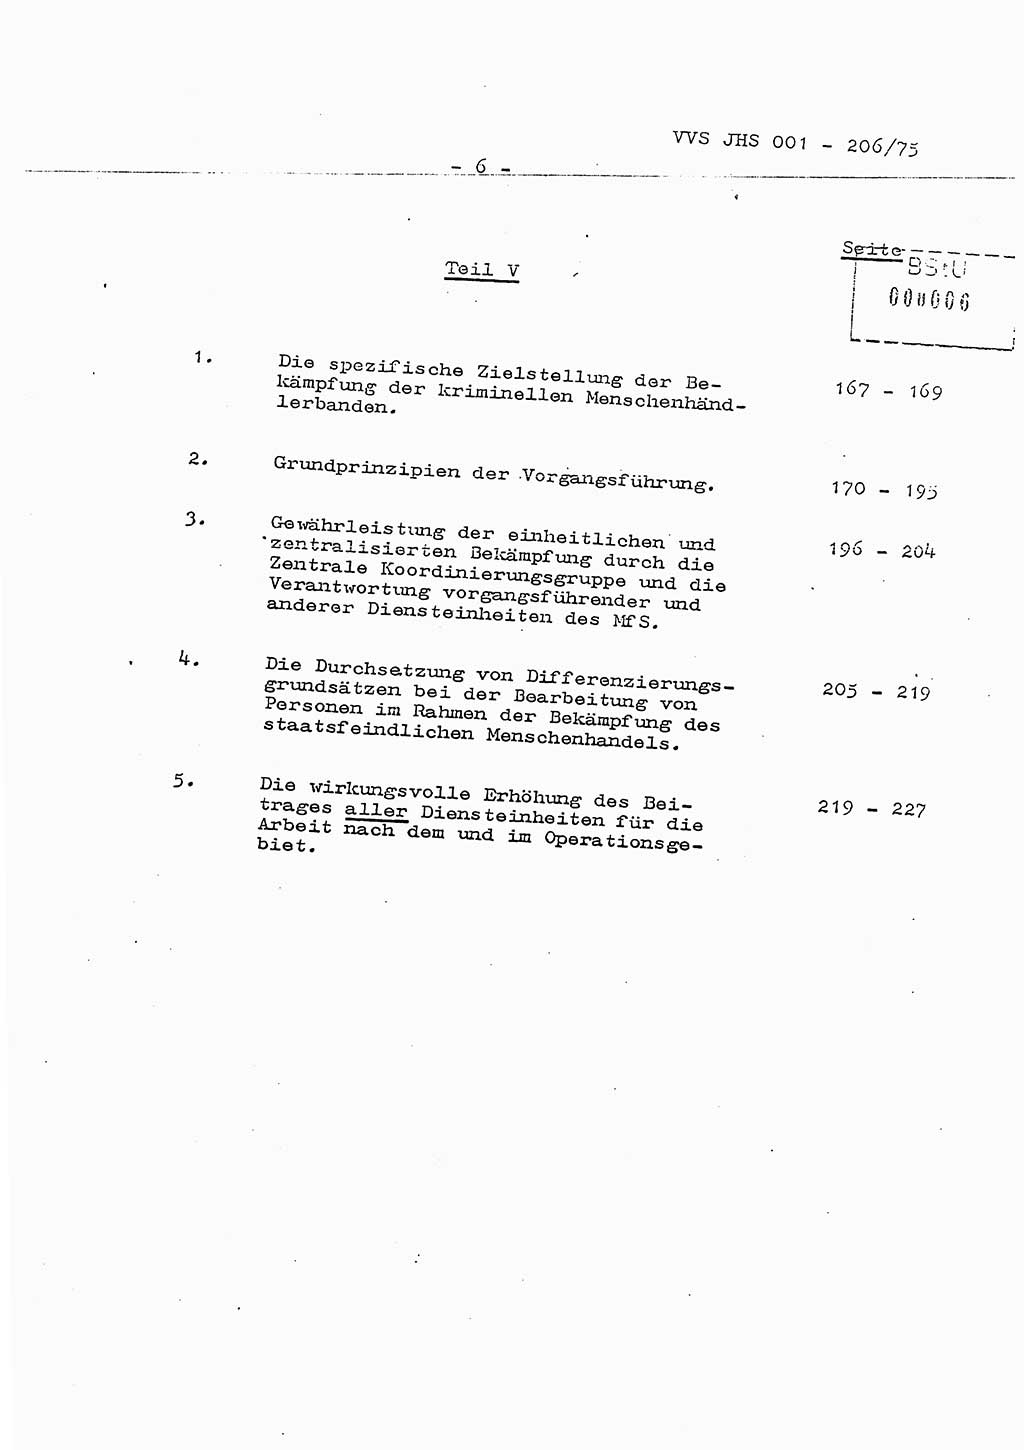 Dissertation Generalmajor Manfred Hummitzsch (Leiter der BV Leipzig), Generalmajor Heinz Fiedler (HA Ⅵ), Oberst Rolf Fister (HA Ⅸ), Ministerium für Staatssicherheit (MfS) [Deutsche Demokratische Republik (DDR)], Juristische Hochschule (JHS), Vertrauliche Verschlußsache (VVS) 001-206/75, Potsdam 1975, Seite 6 (Diss. MfS DDR JHS VVS 001-206/75 1975, S. 6)